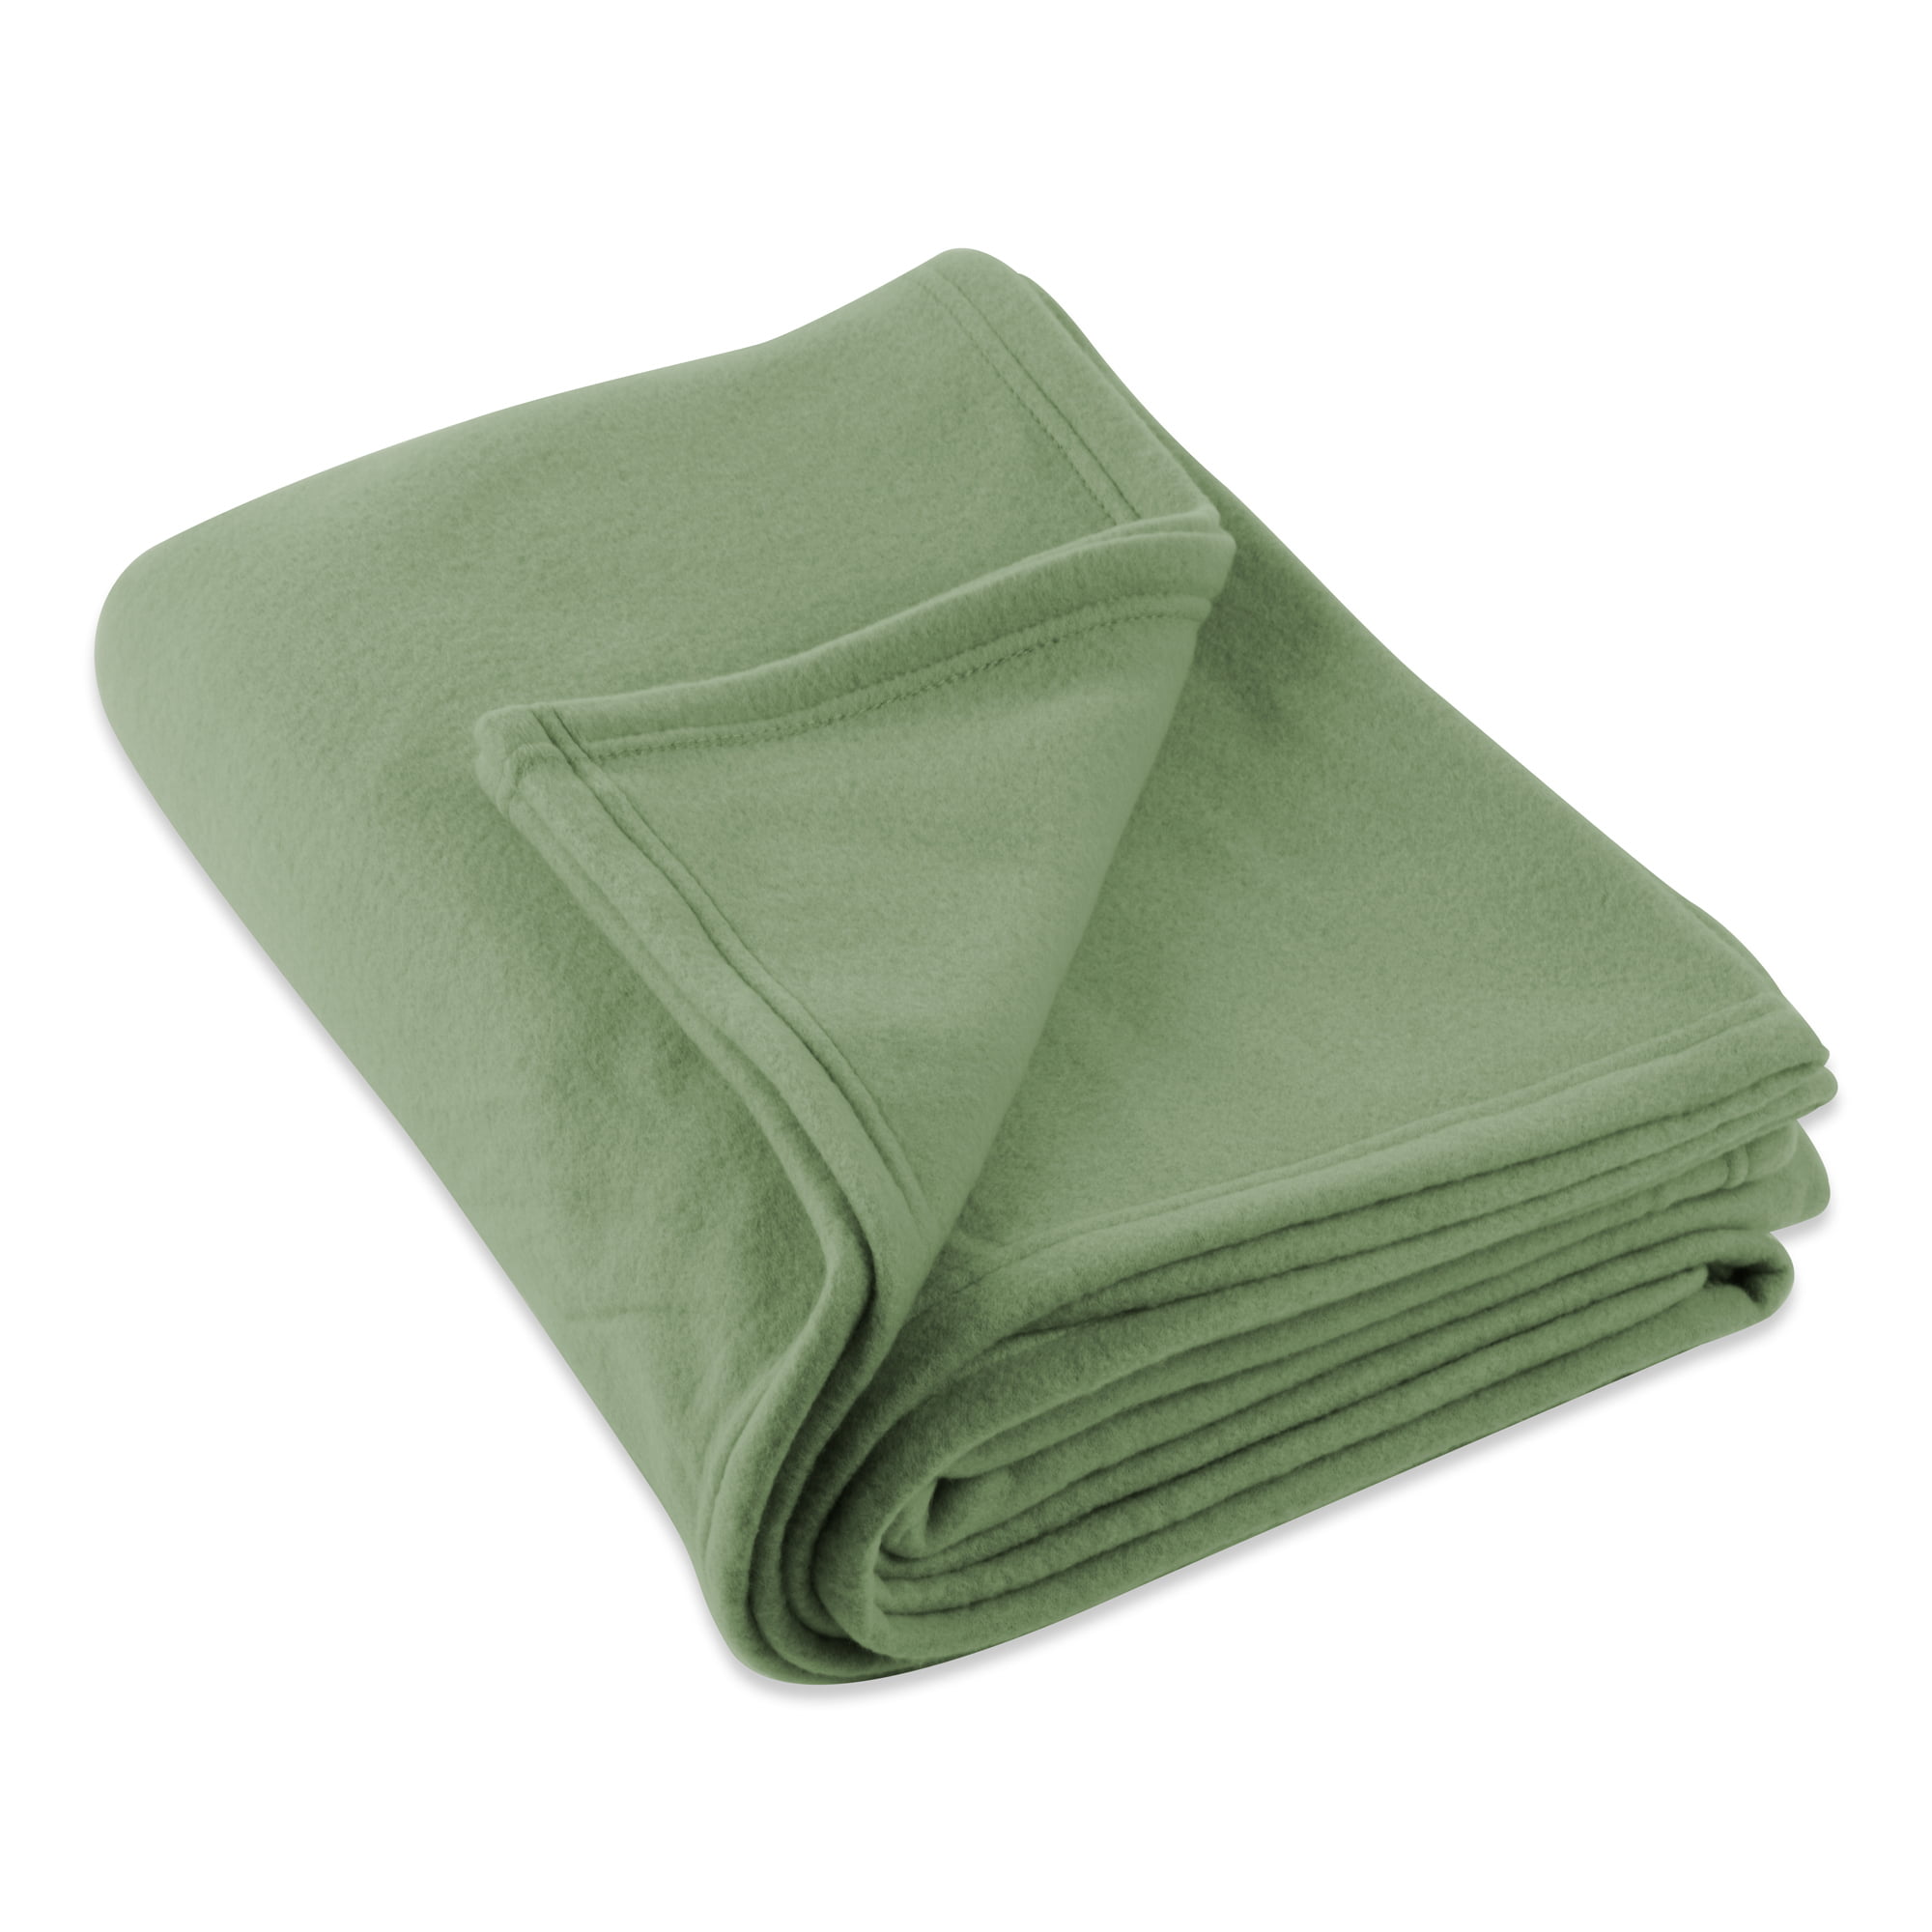 9' Olive Green Fleece Blanket - Walmart.com - Walmart.com